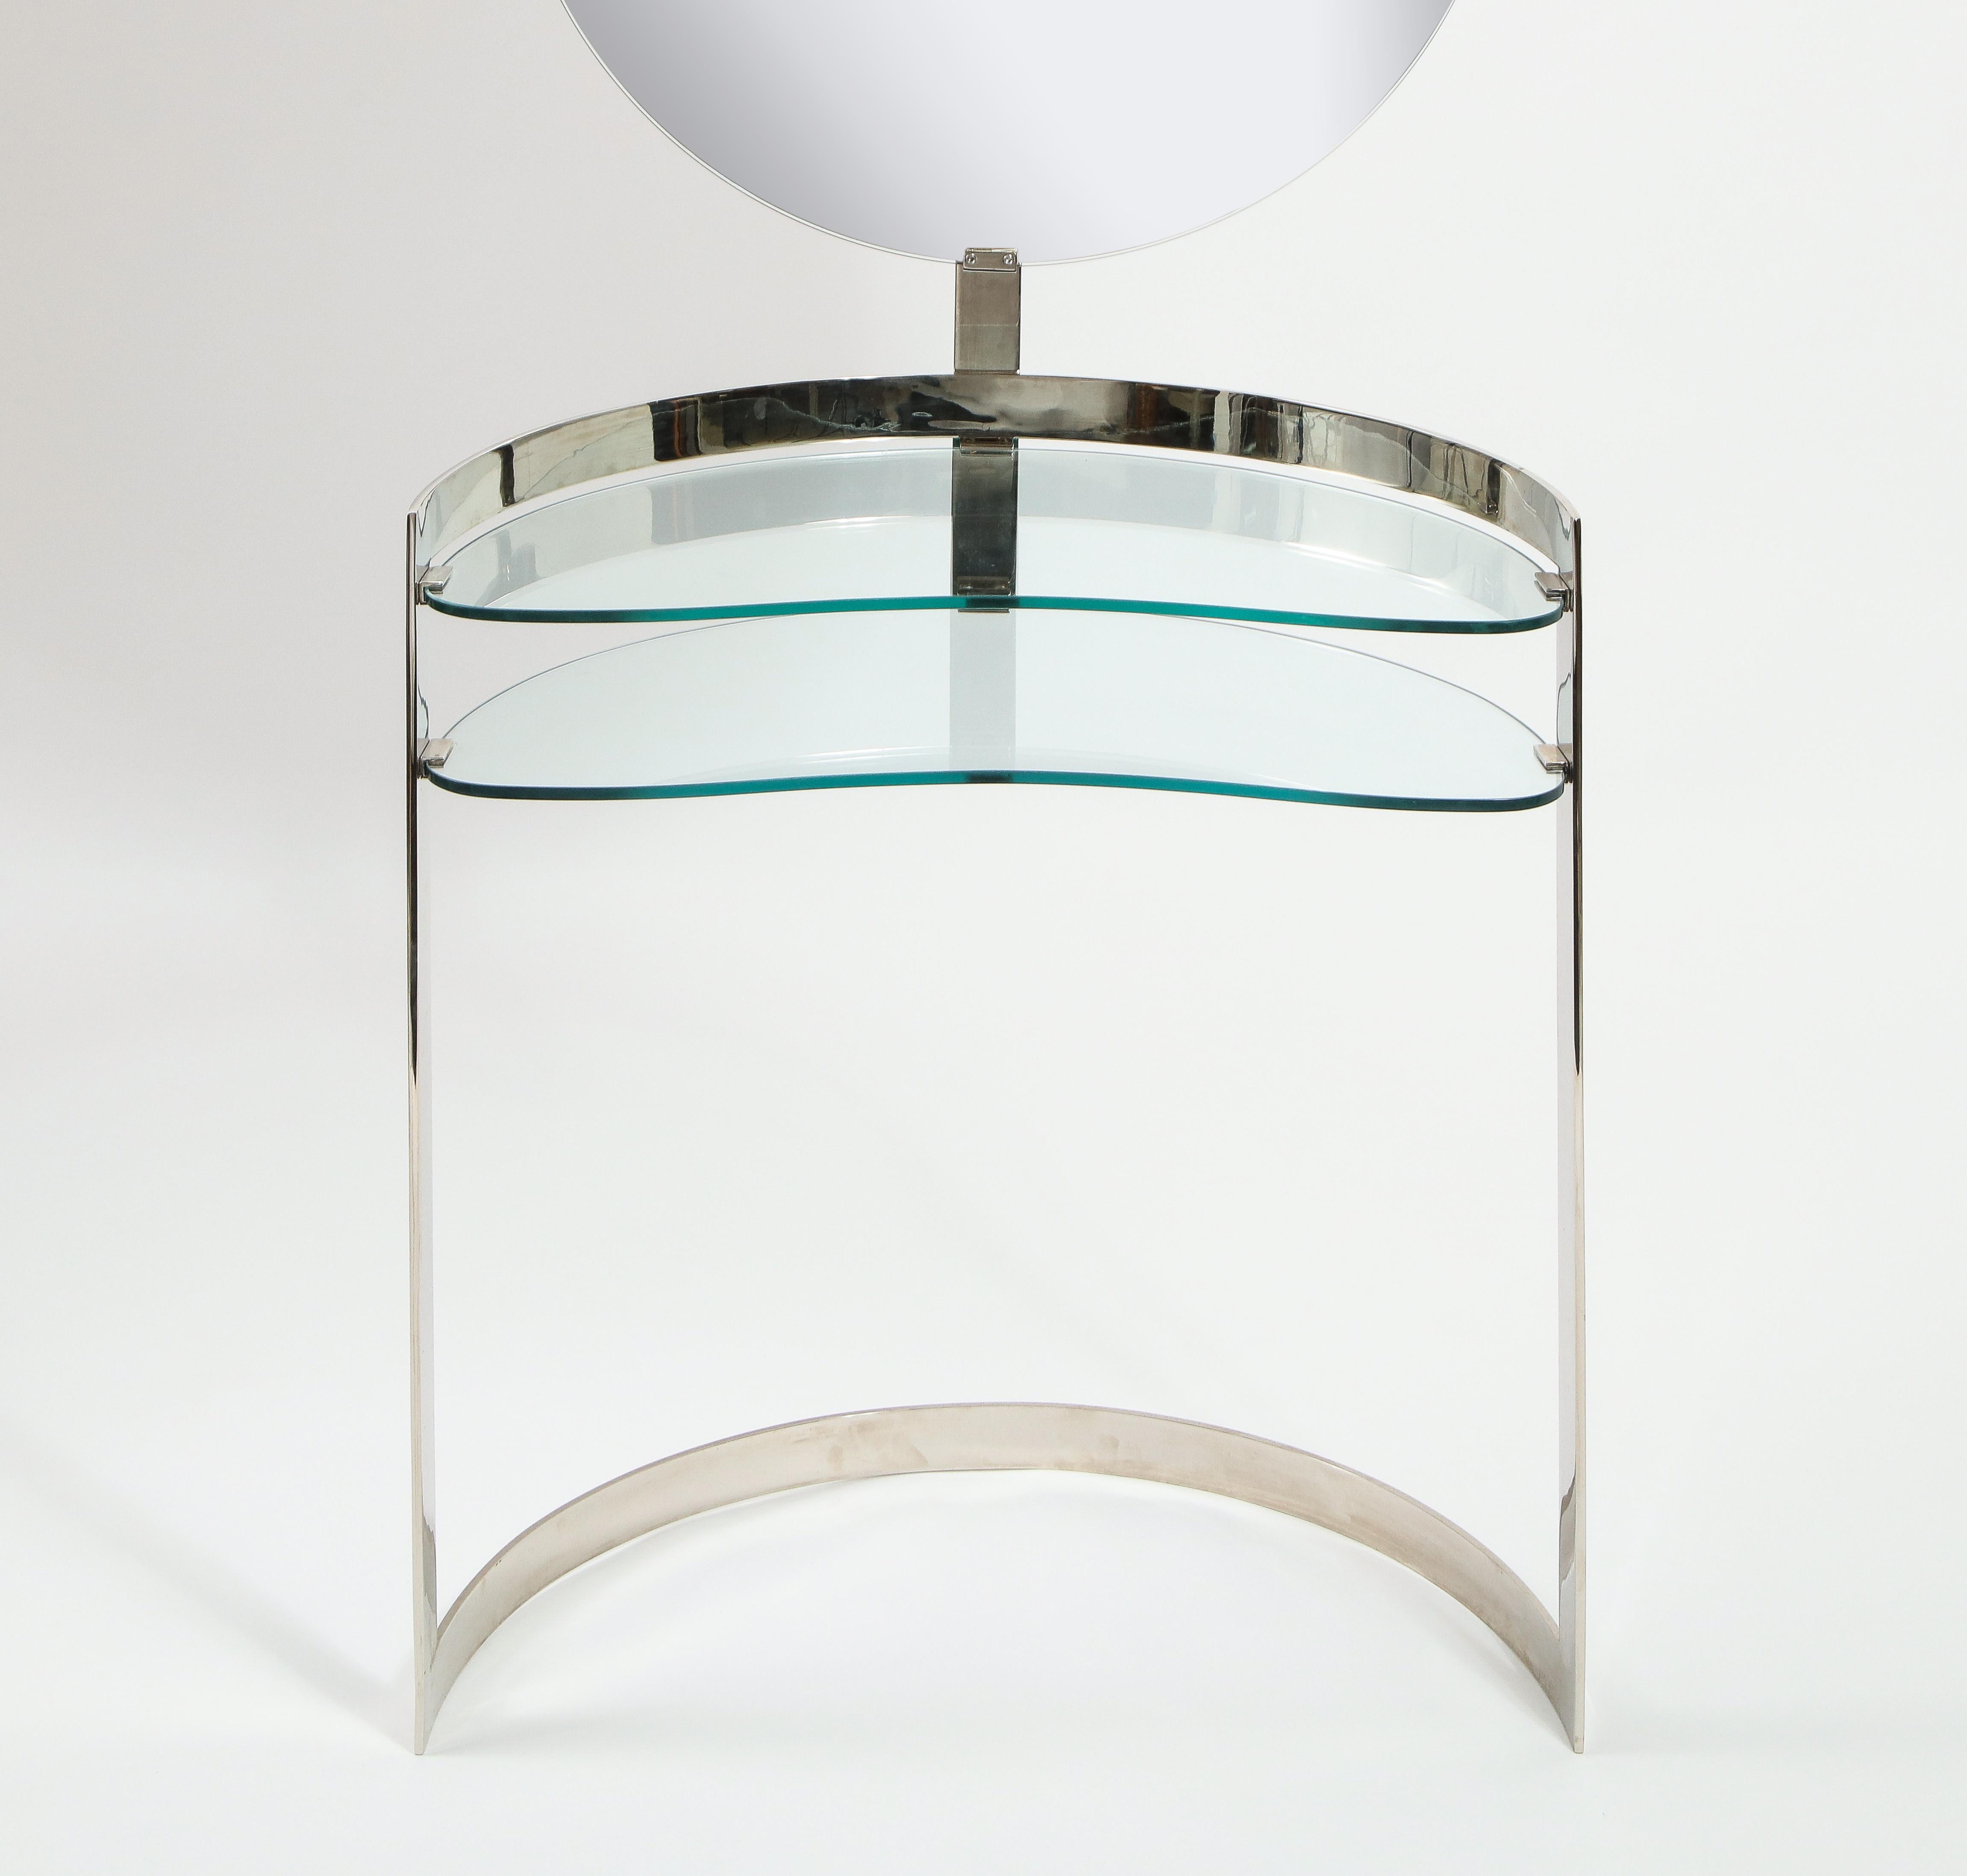 Waschtisch aus Nickel und Glas im Stil von Boris Tabacoff mit verstellbarem Licht, die bohnenförmigen Glasebenen auf zwei Ebenen ergänzen die geschwungene Form des Rahmens, der Spiegel ist mit poliertem Edelstahl hinterlegt, so dass der Waschtisch